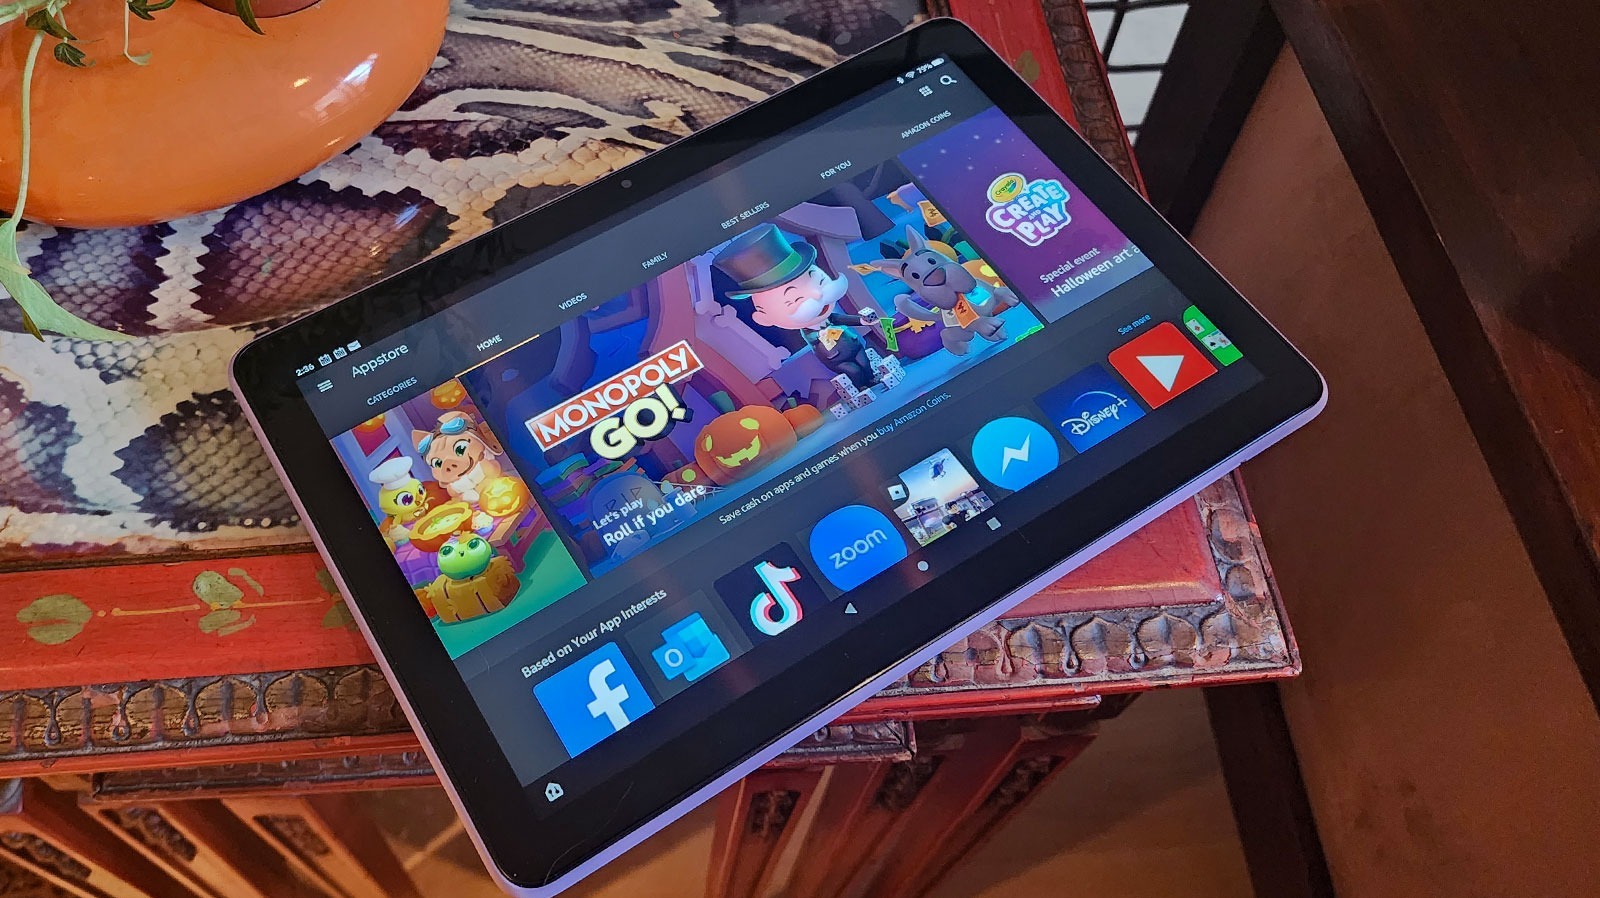 Fire HD 10 Tablet mit Full HD-Display & Octa Core-Prozessor